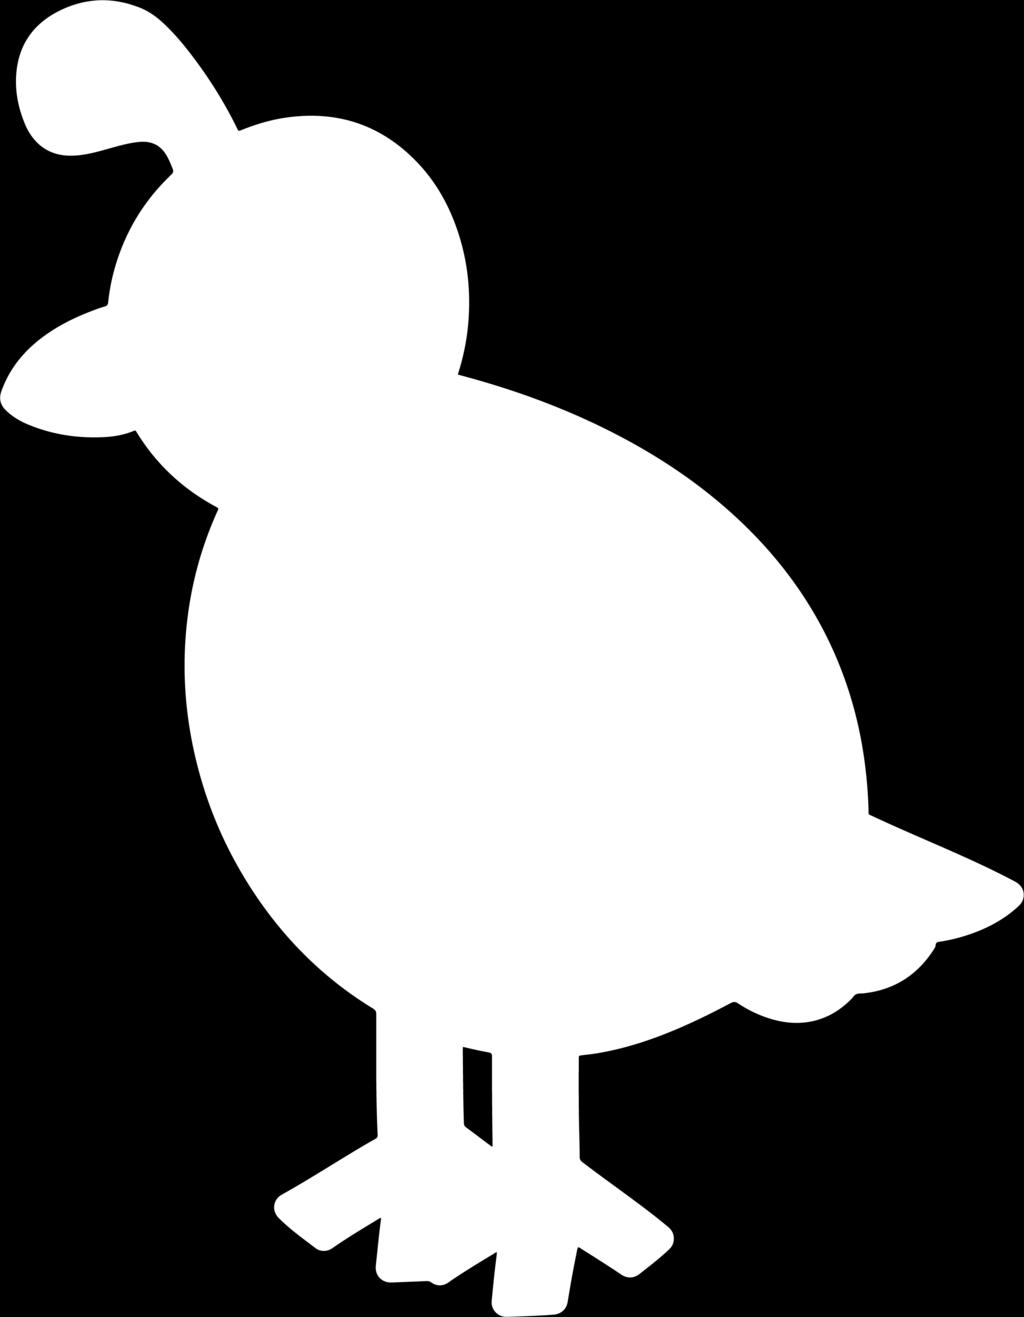 quack,